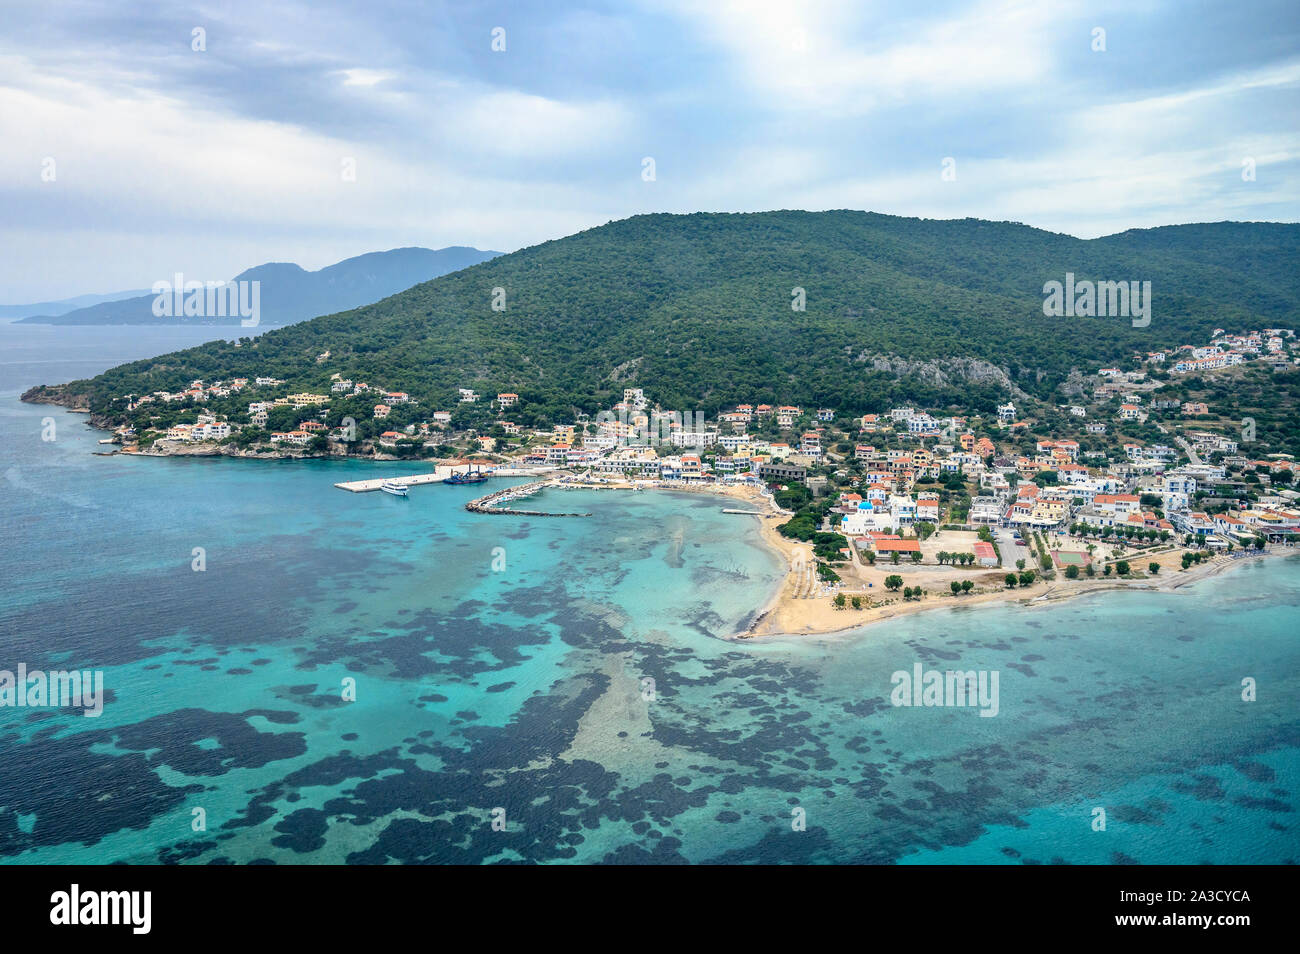 Vista aerea della città e il porto di Skala, sull'isola di Agistri, nel Golfo di Saronico vicino ad Atene, Grecia Foto Stock